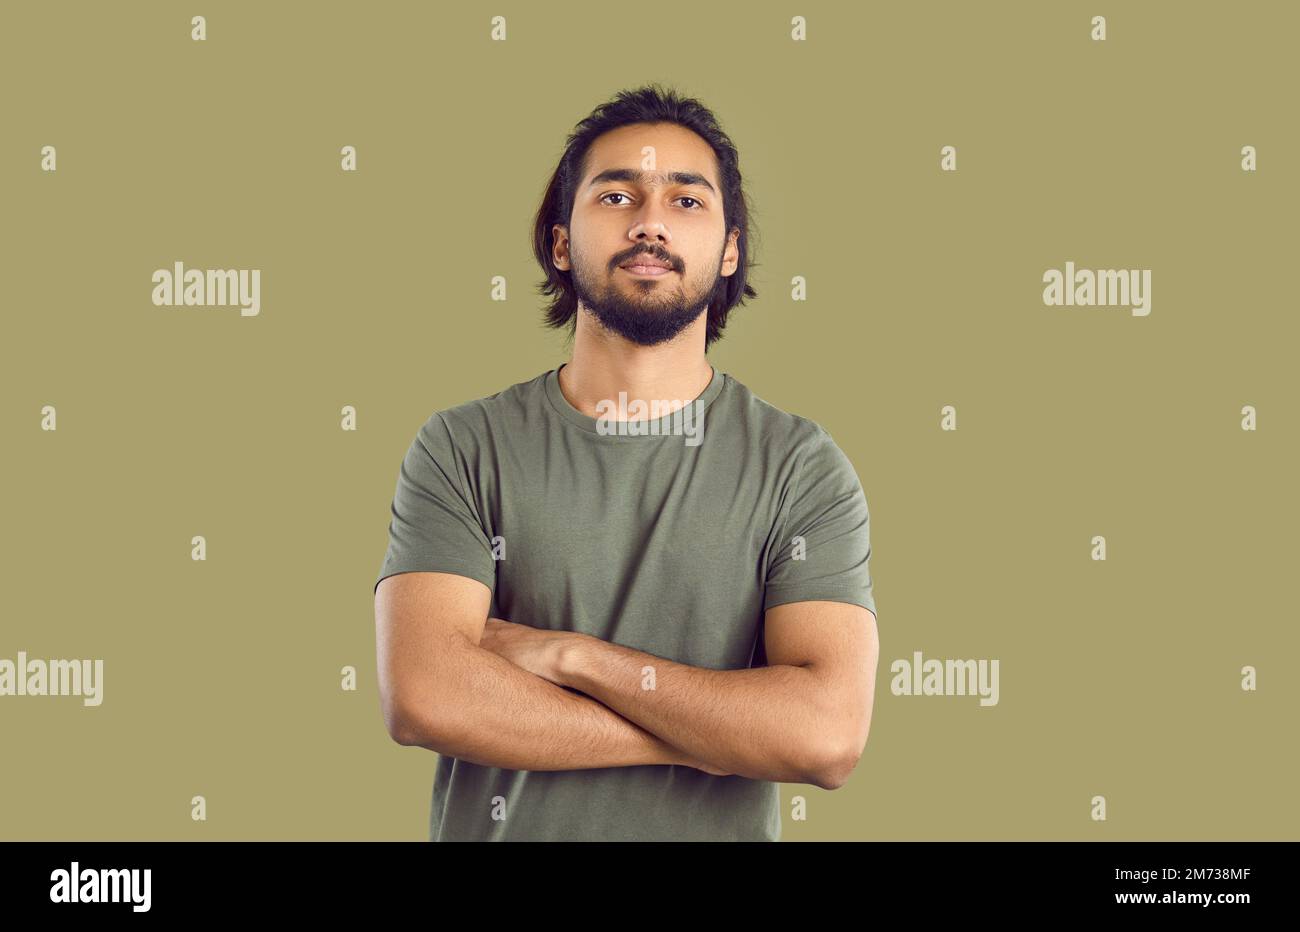 Joven morena hombre indio millennial con barba en pose de persona segura con los brazos cruzados Foto de stock